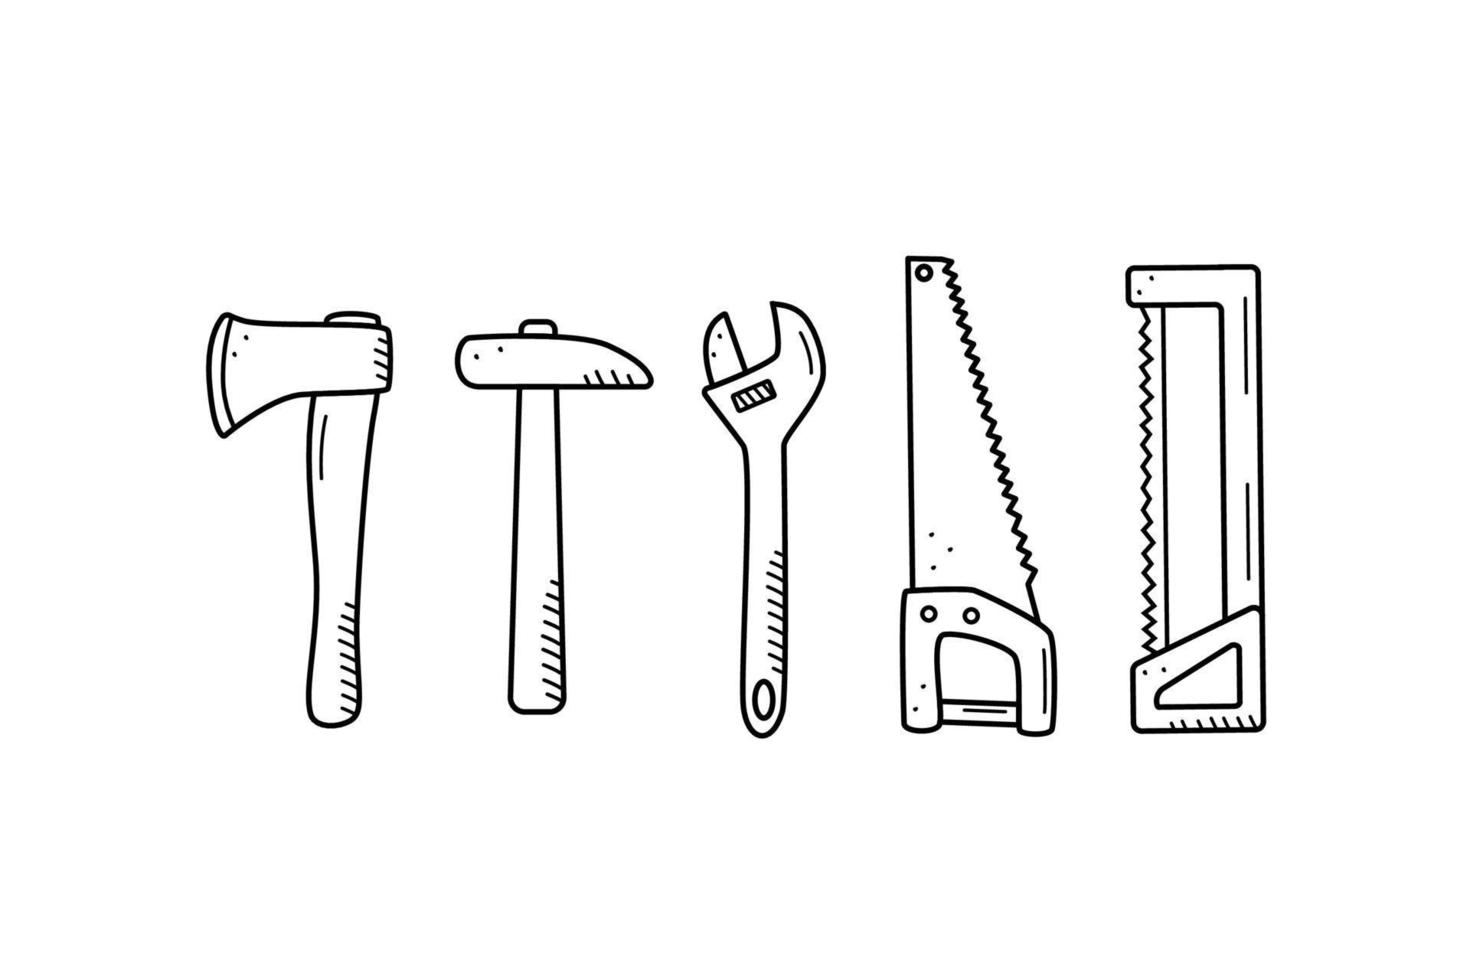 chave de serra de martelo de machado, ícones de doodle de ferramentas manuais de jardim ou construção. ilustração vetorial vetor